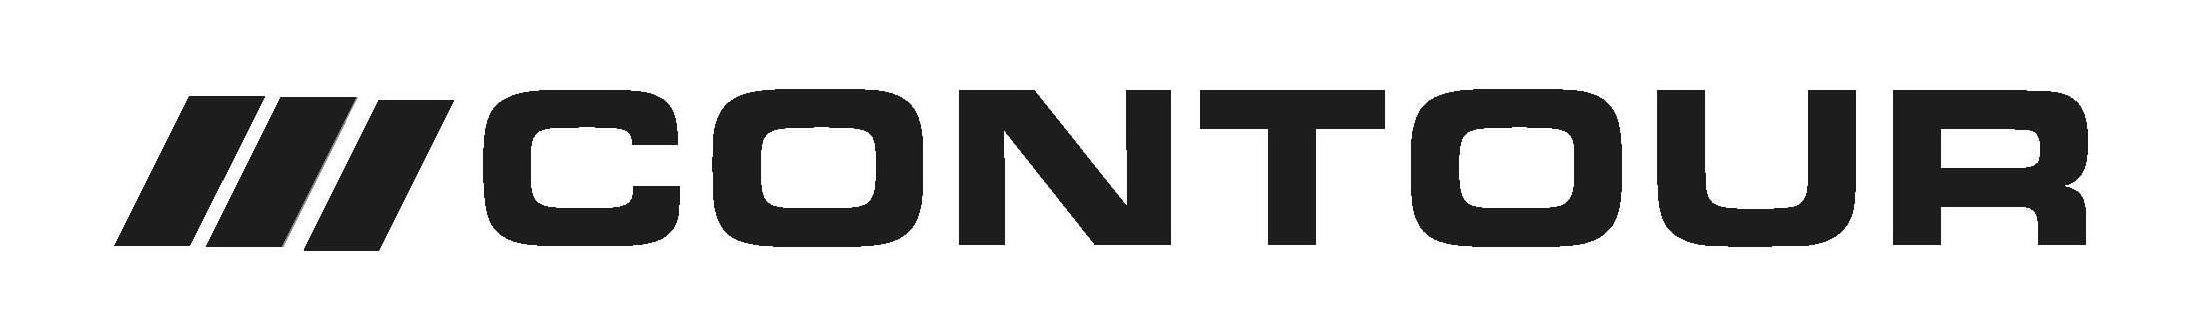 Trademark Logo CONTOUR